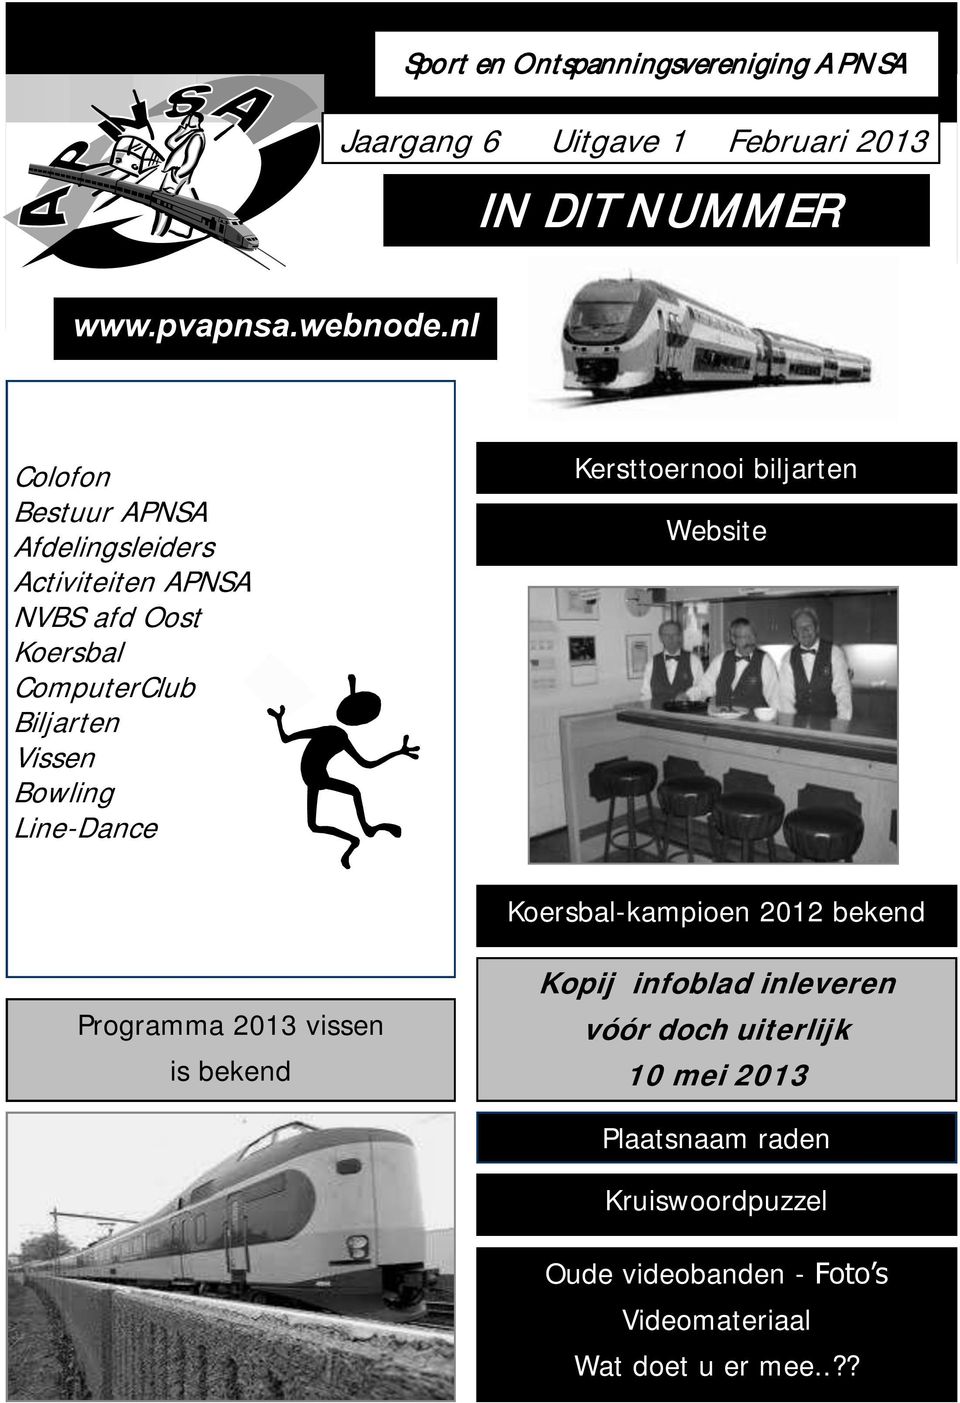 Line-Dance Kersttoernooi biljarten Website Koersbal-kampioen 2012 bekend Programma 2013 vissen is bekend Kopij infoblad